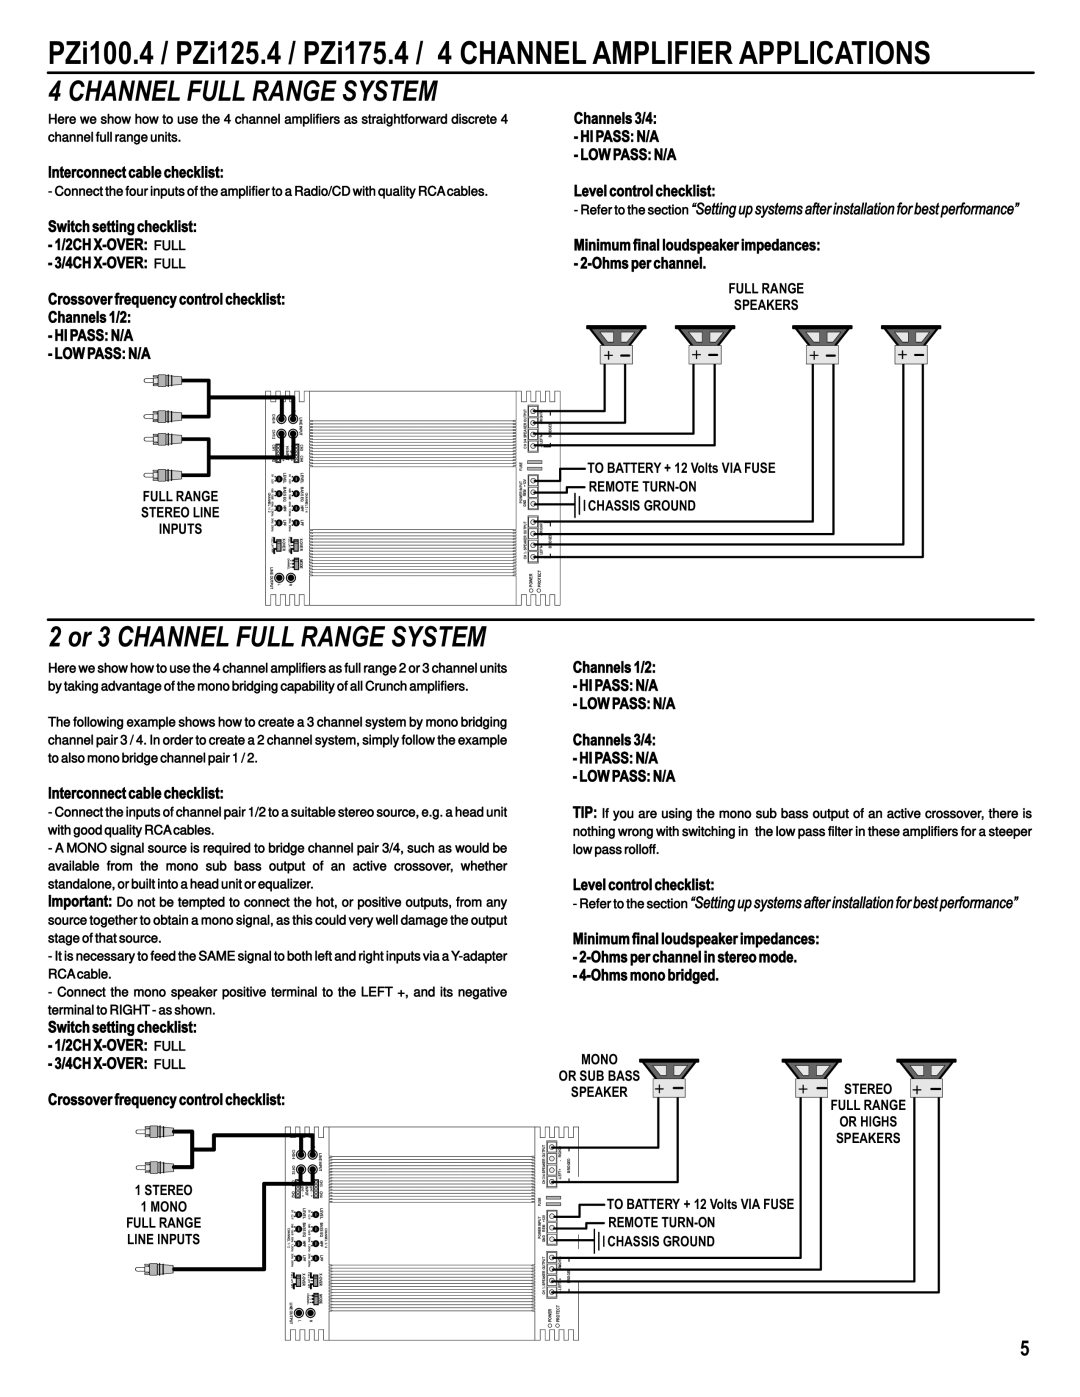 Maxxsonics PZI1000.1, PZI325.1, PZI175.4, PZI550.5, PZI1500.1 Channel Full Range System, 2 or 3 CHANNEL FULL RANGE SYSTEM 